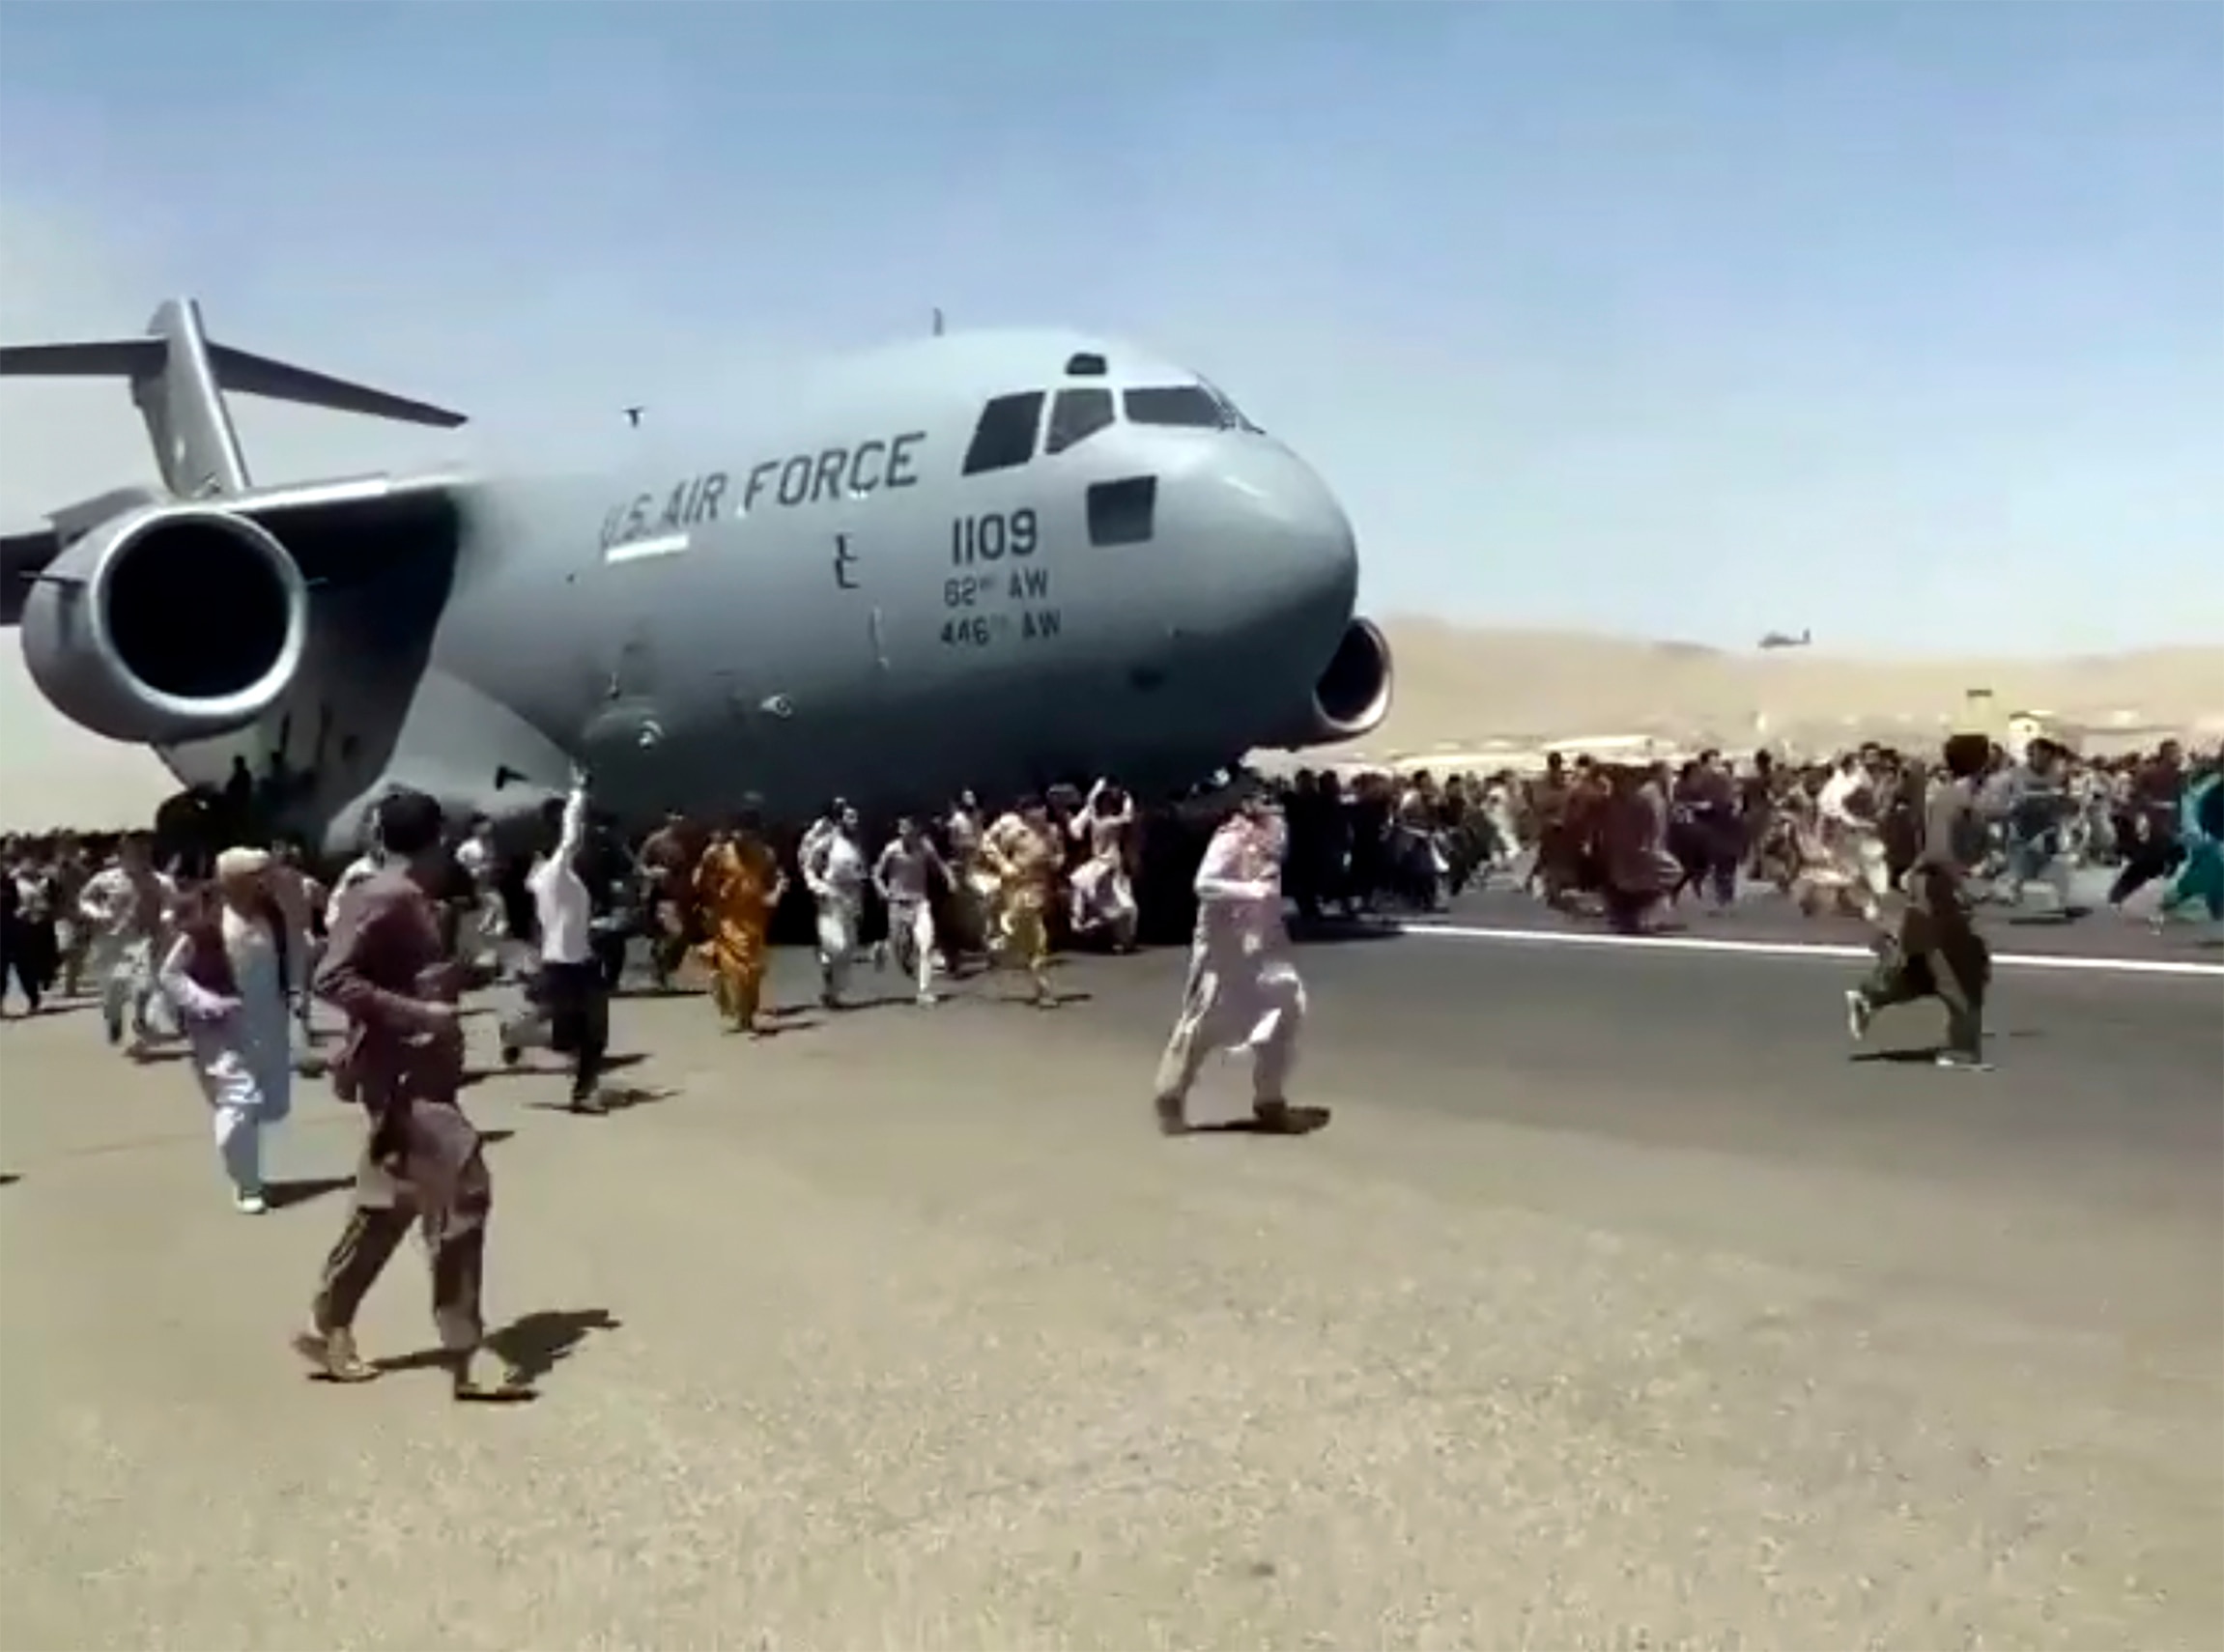 Centinaia di persone corrono al fianco di un aereo da trasporto C-17 della US Air Force mentre si muove lungo l'asfalto dell'aeroporto internazionale, a Kabul, in Afghanistan.